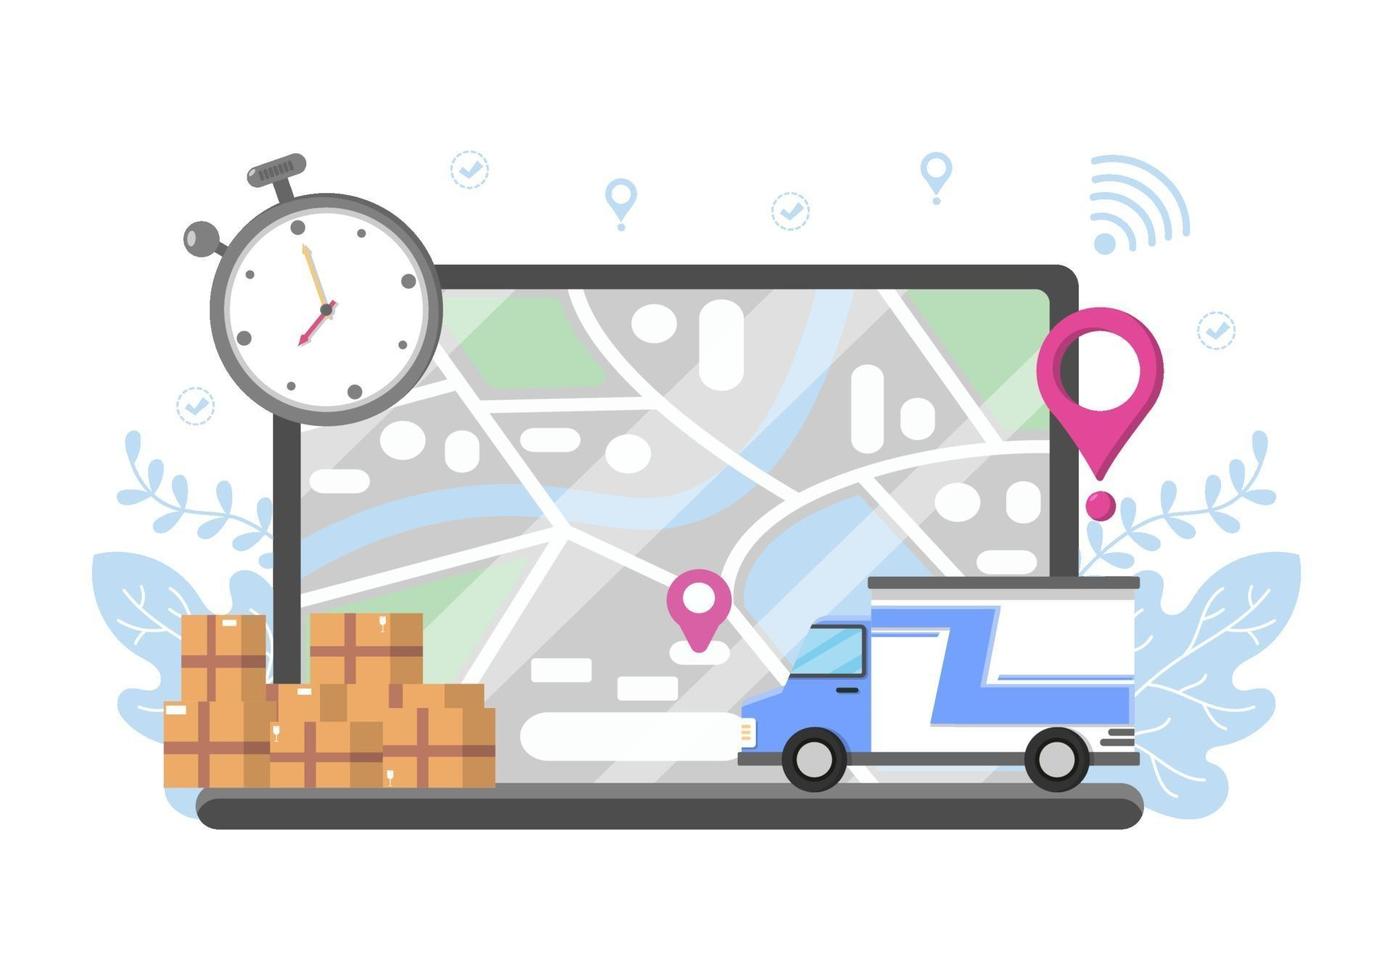 illustration plate de la livraison en ligne pour le suivi des commandes, le service de messagerie, l'expédition de marchandises, la logistique urbaine à l'aide d'un camion ou d'une moto vecteur